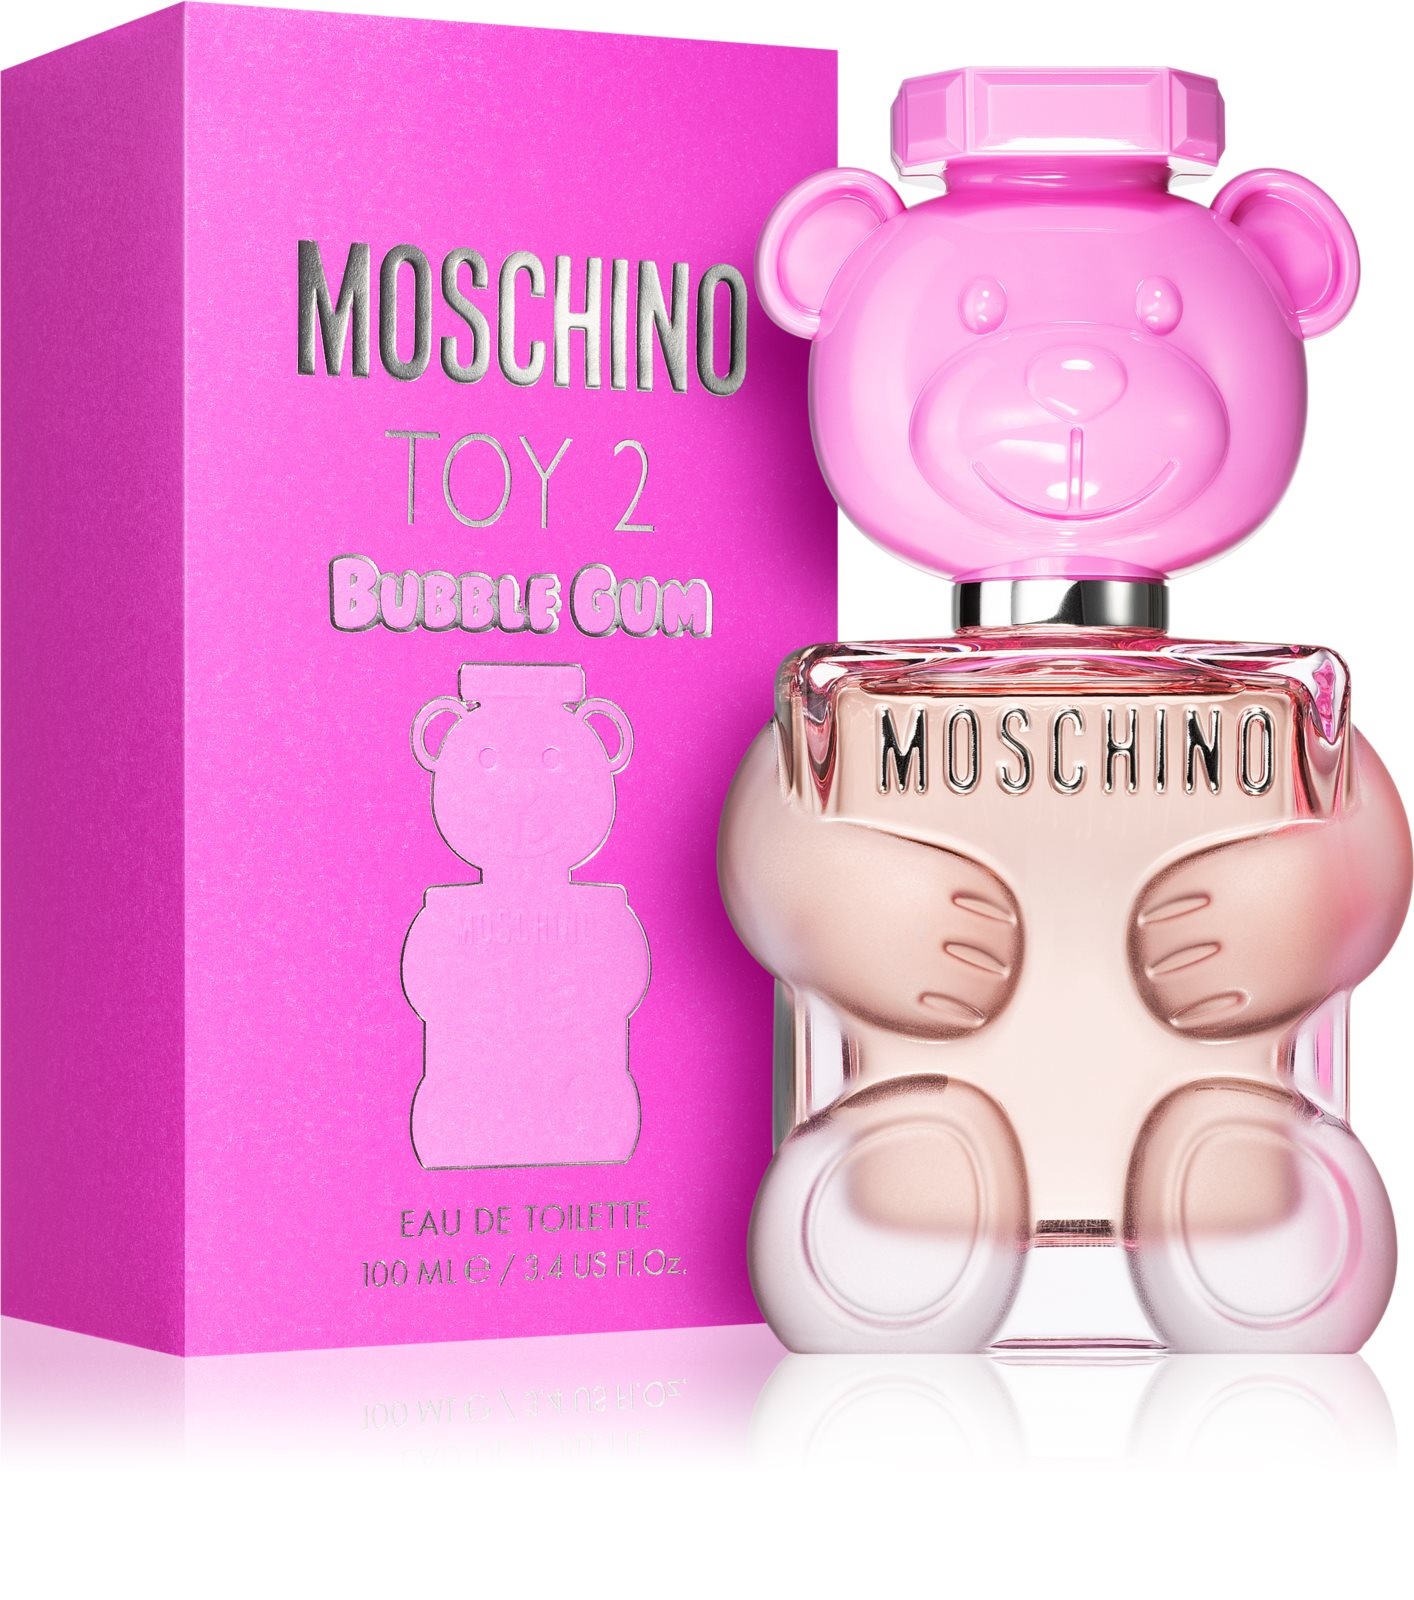 Moschino Toy 2 Bubble Gum toaletní voda pro ženy - MARIANET.cz